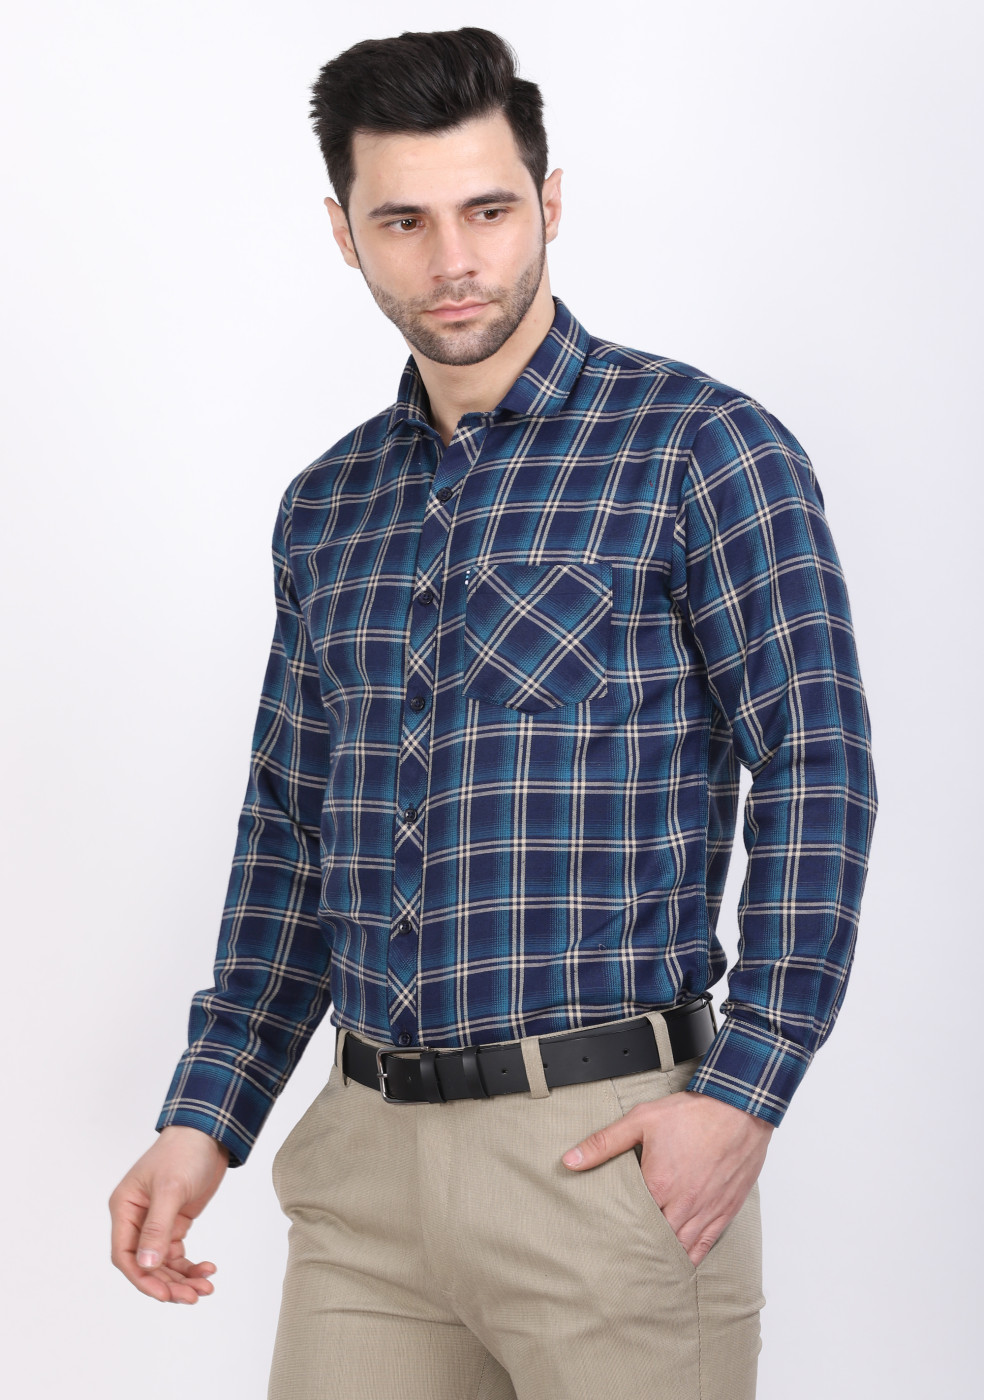 ASHTOM Green & Blue Check Shirt For Men